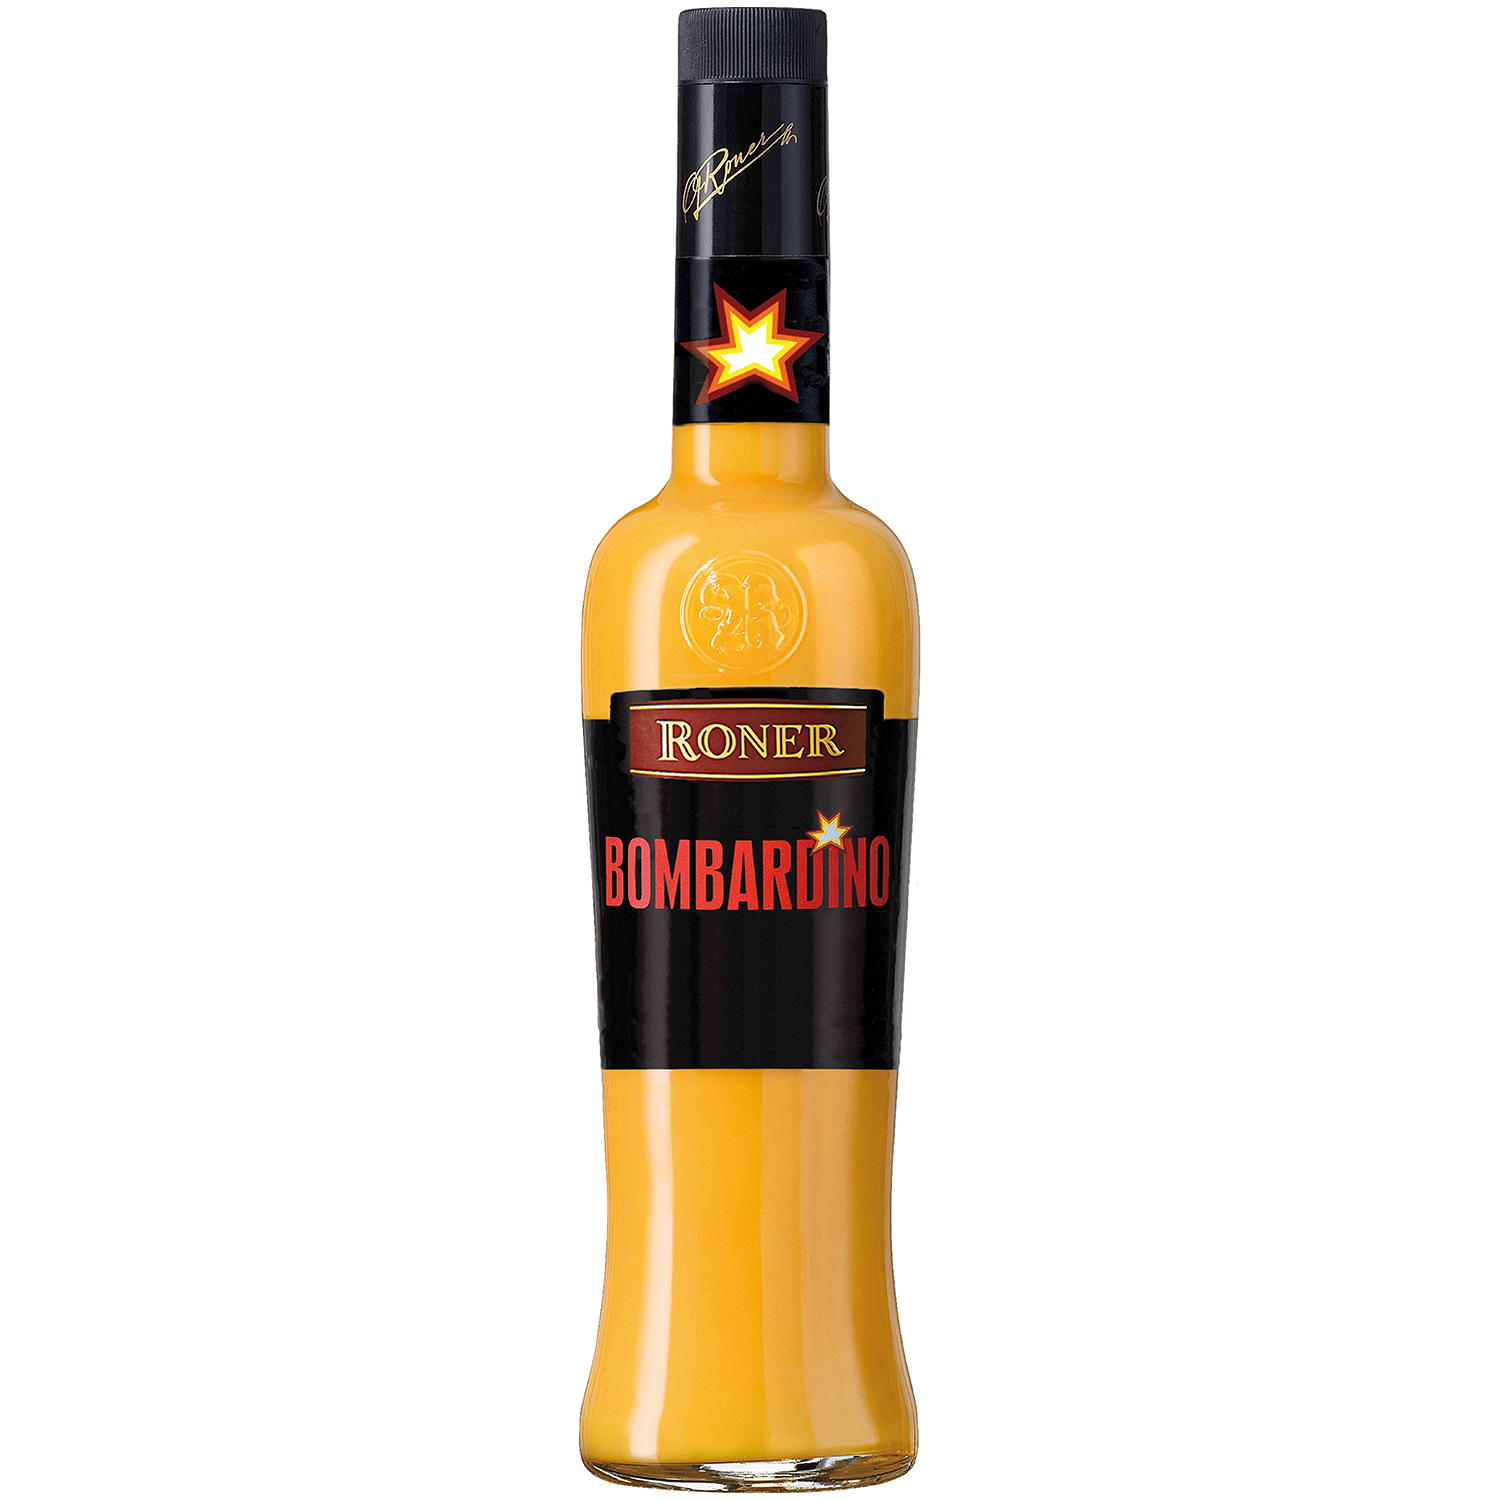 Bombardino by Roner in 700ml bottle